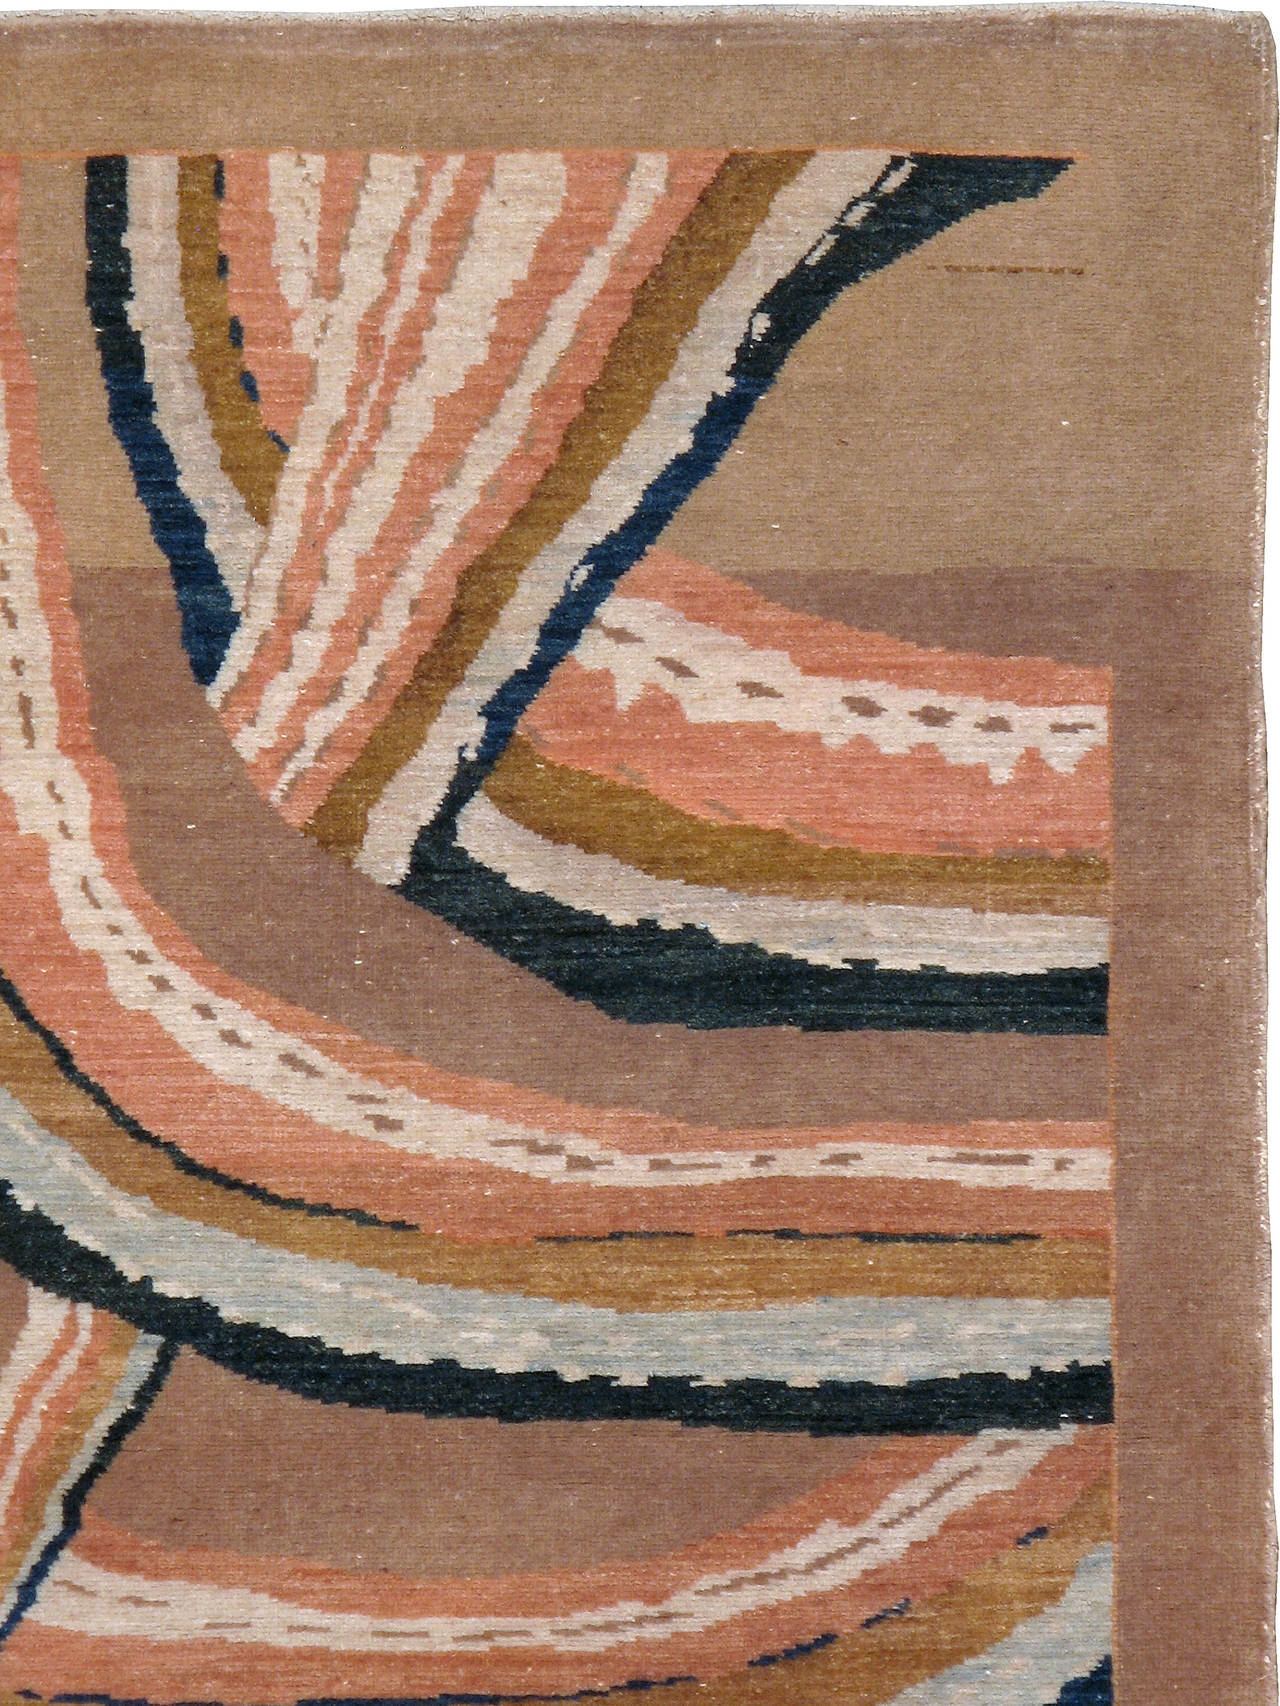 vintage inspired rugs